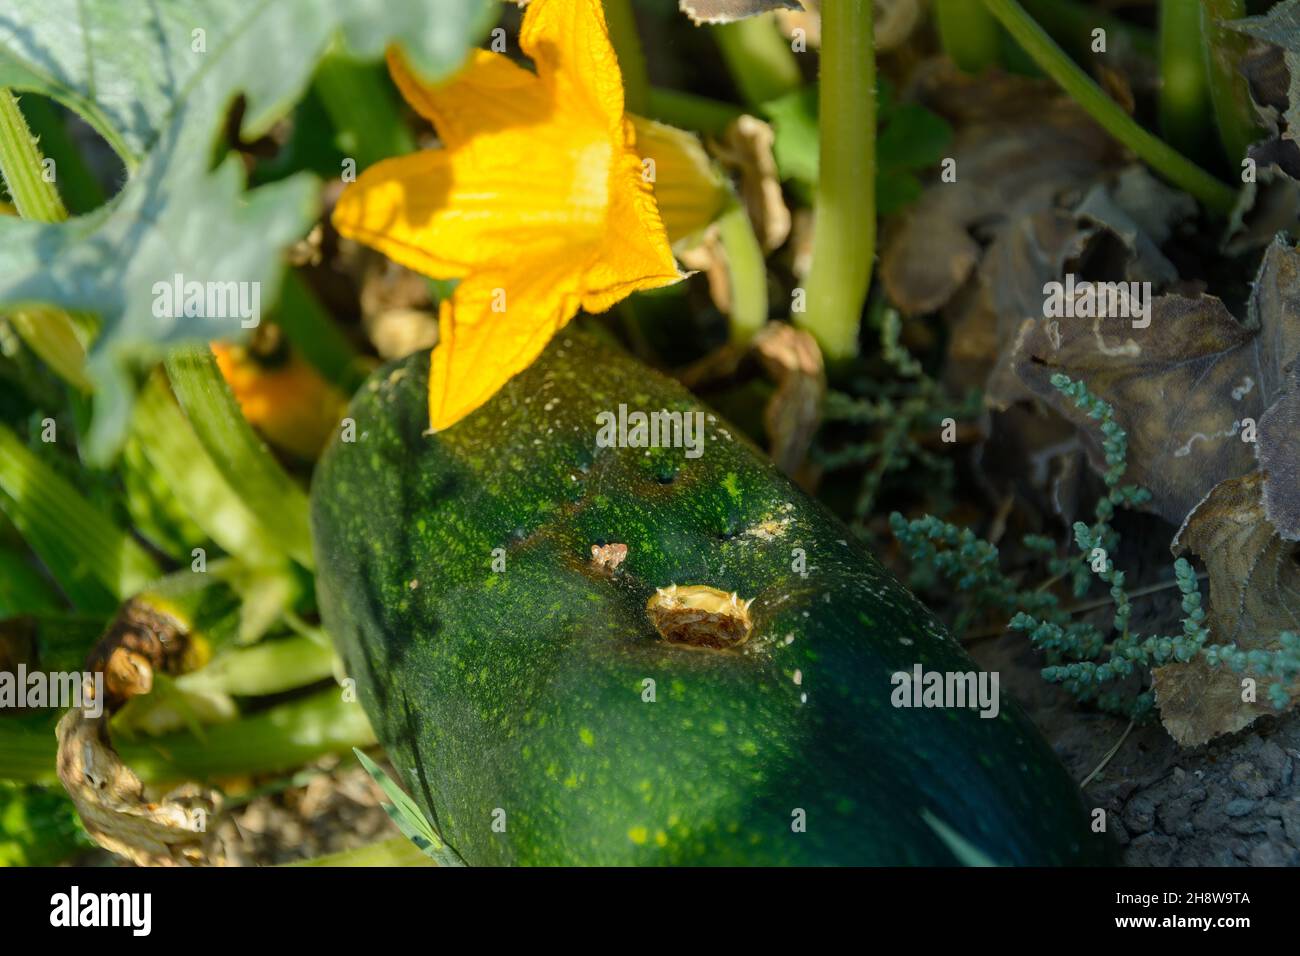 Pianta di Courgette infetta o Pepo di Cucurbita con fiori d'arancio in crescita, zucca verde nel giardino vegetale Foto Stock